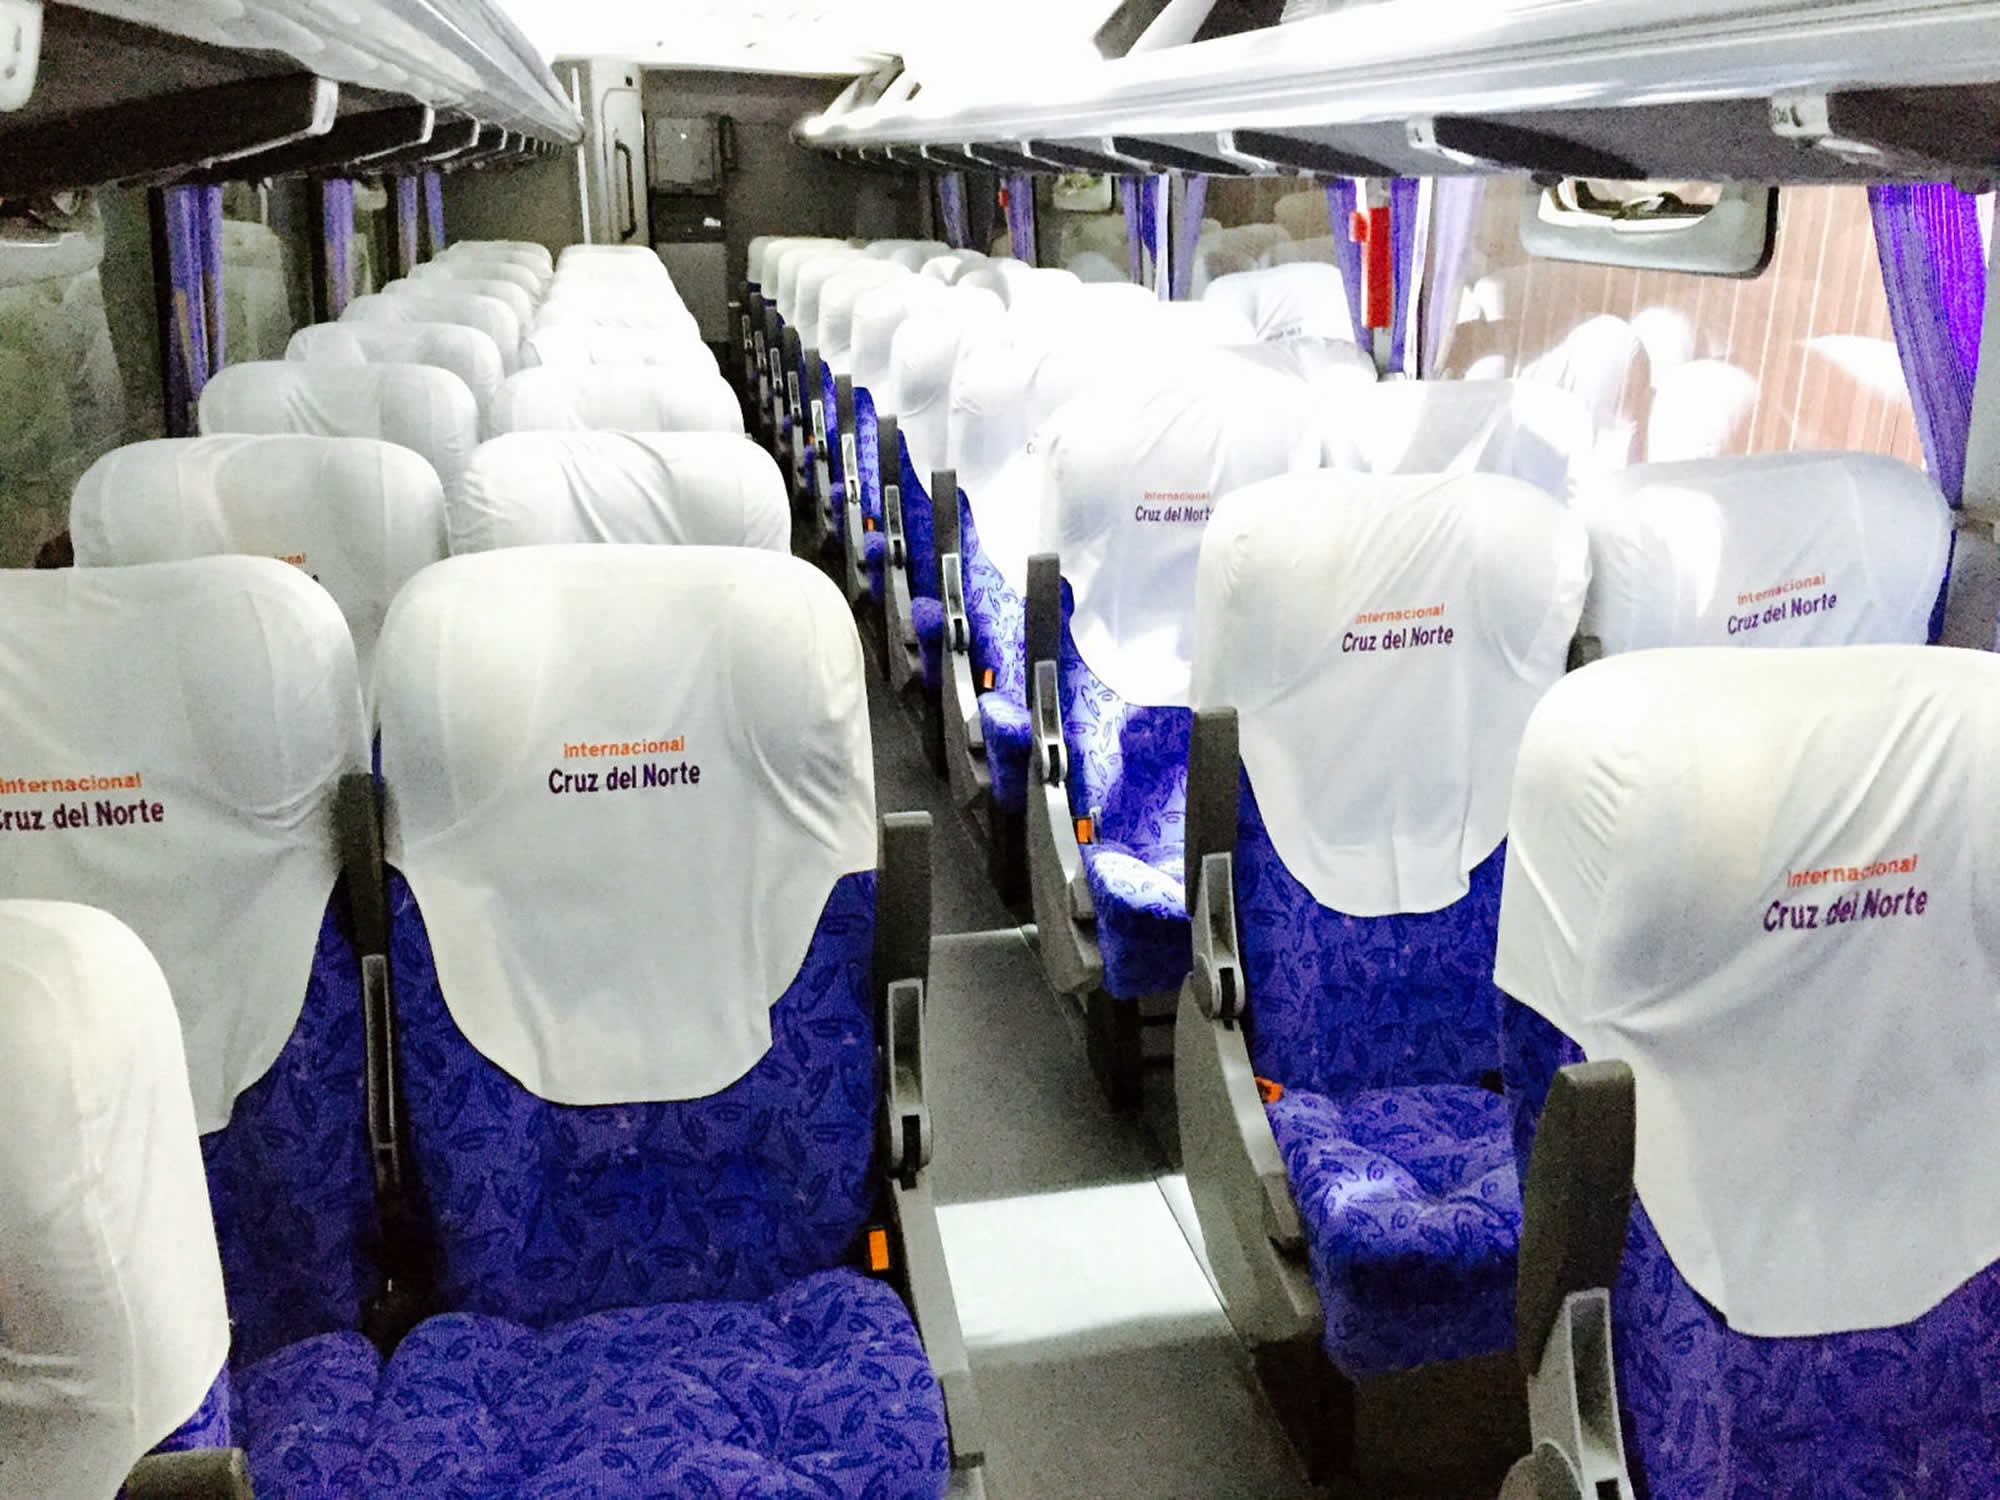 Cruz del Norte bus seats